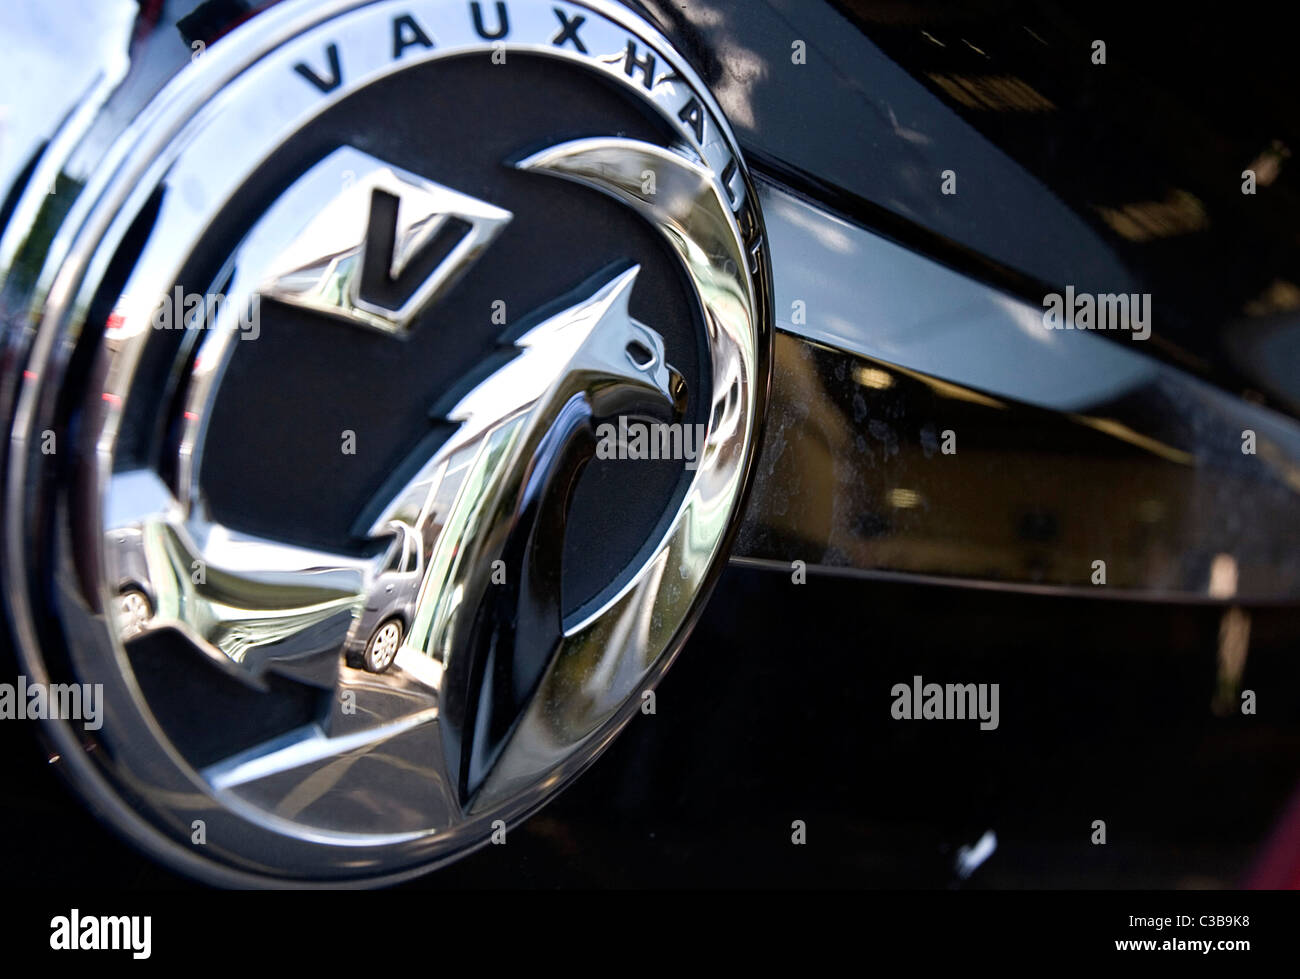 Immagine illustrativa di Vauxhall cars, parte della General Motors Group. Foto Stock